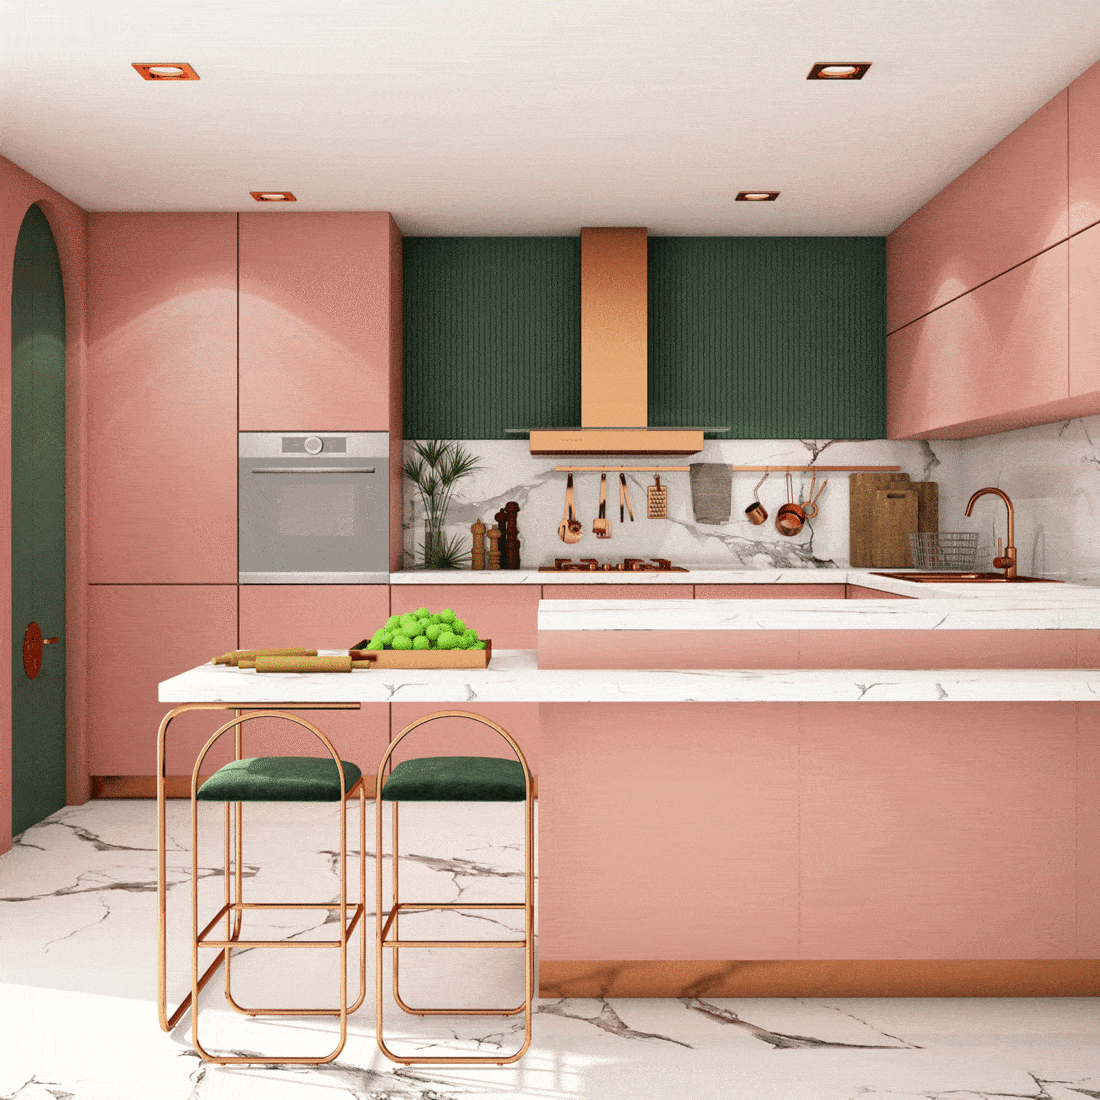 Pink Kitchen Design